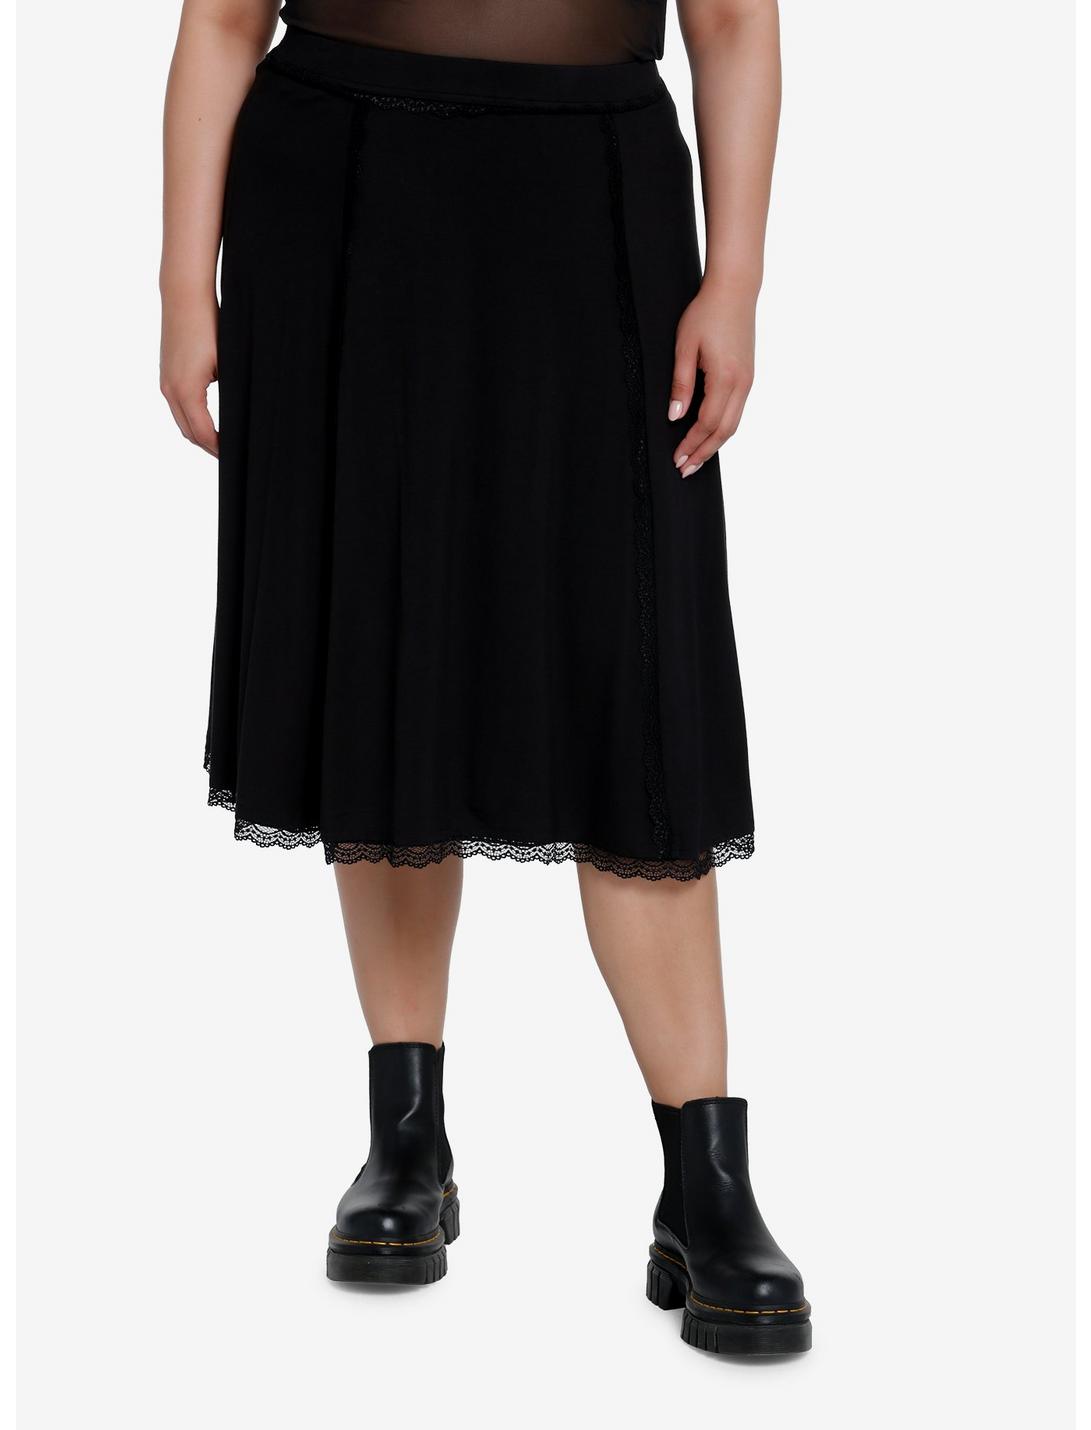 Cosmic Aura Black Lace Midi Skirt Plus Size, BLACK, hi-res